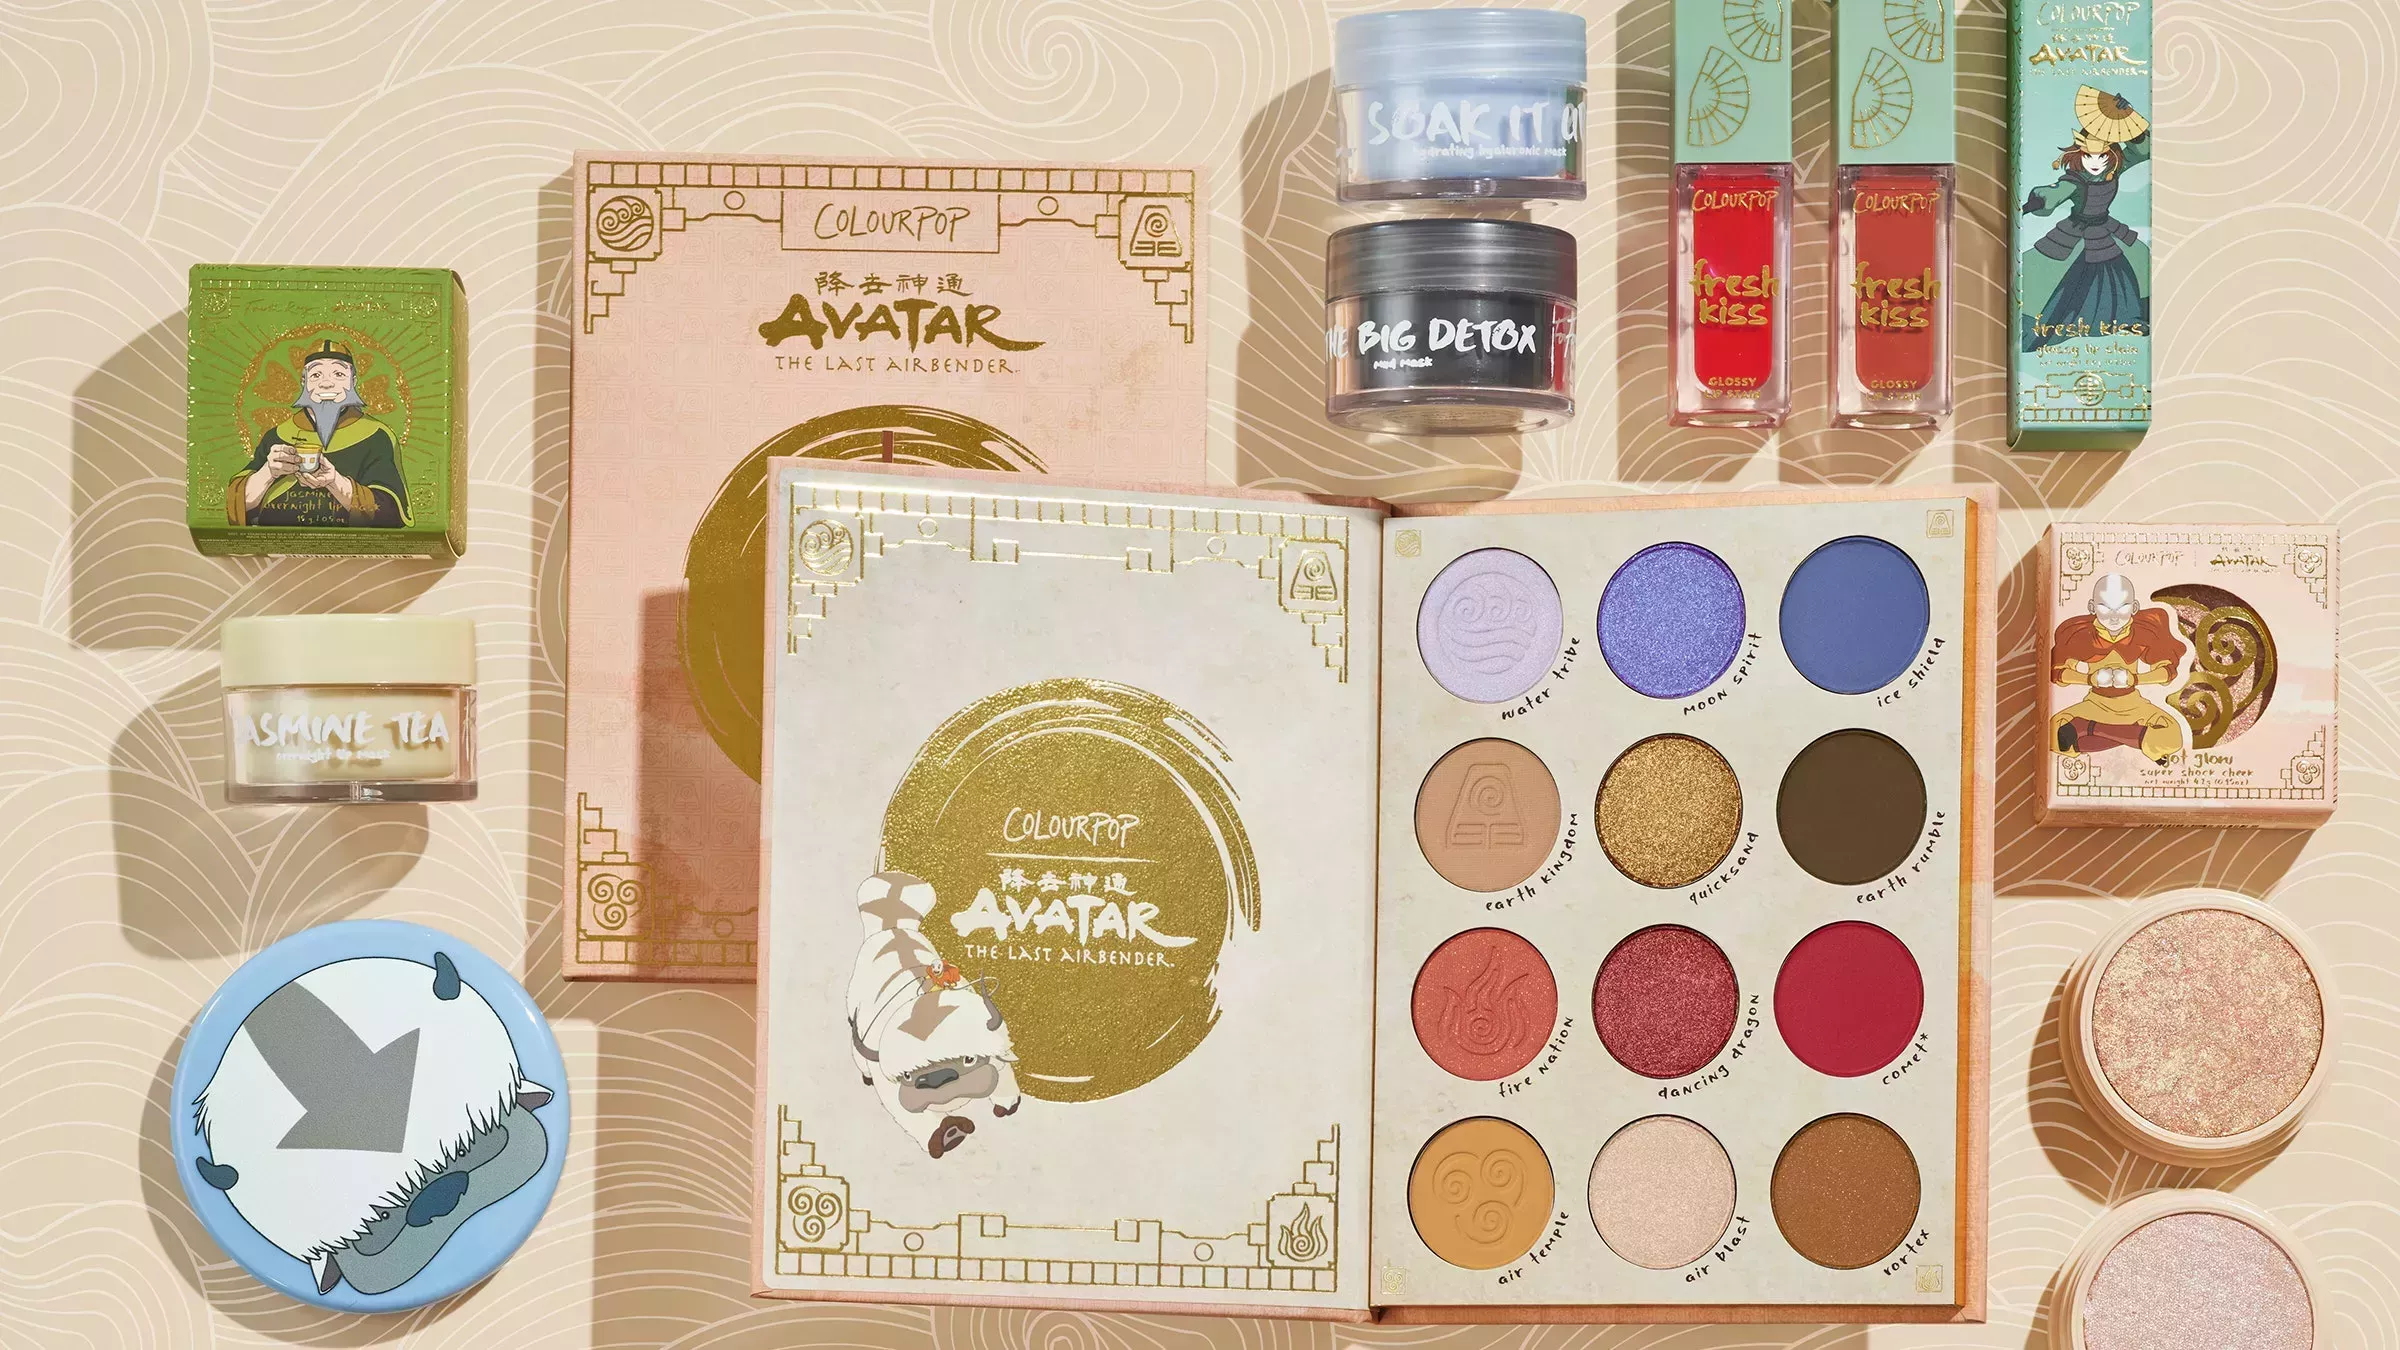 Escuchen, nerds: Hay una colección de maquillaje de "Avatar: the Last Airbender".